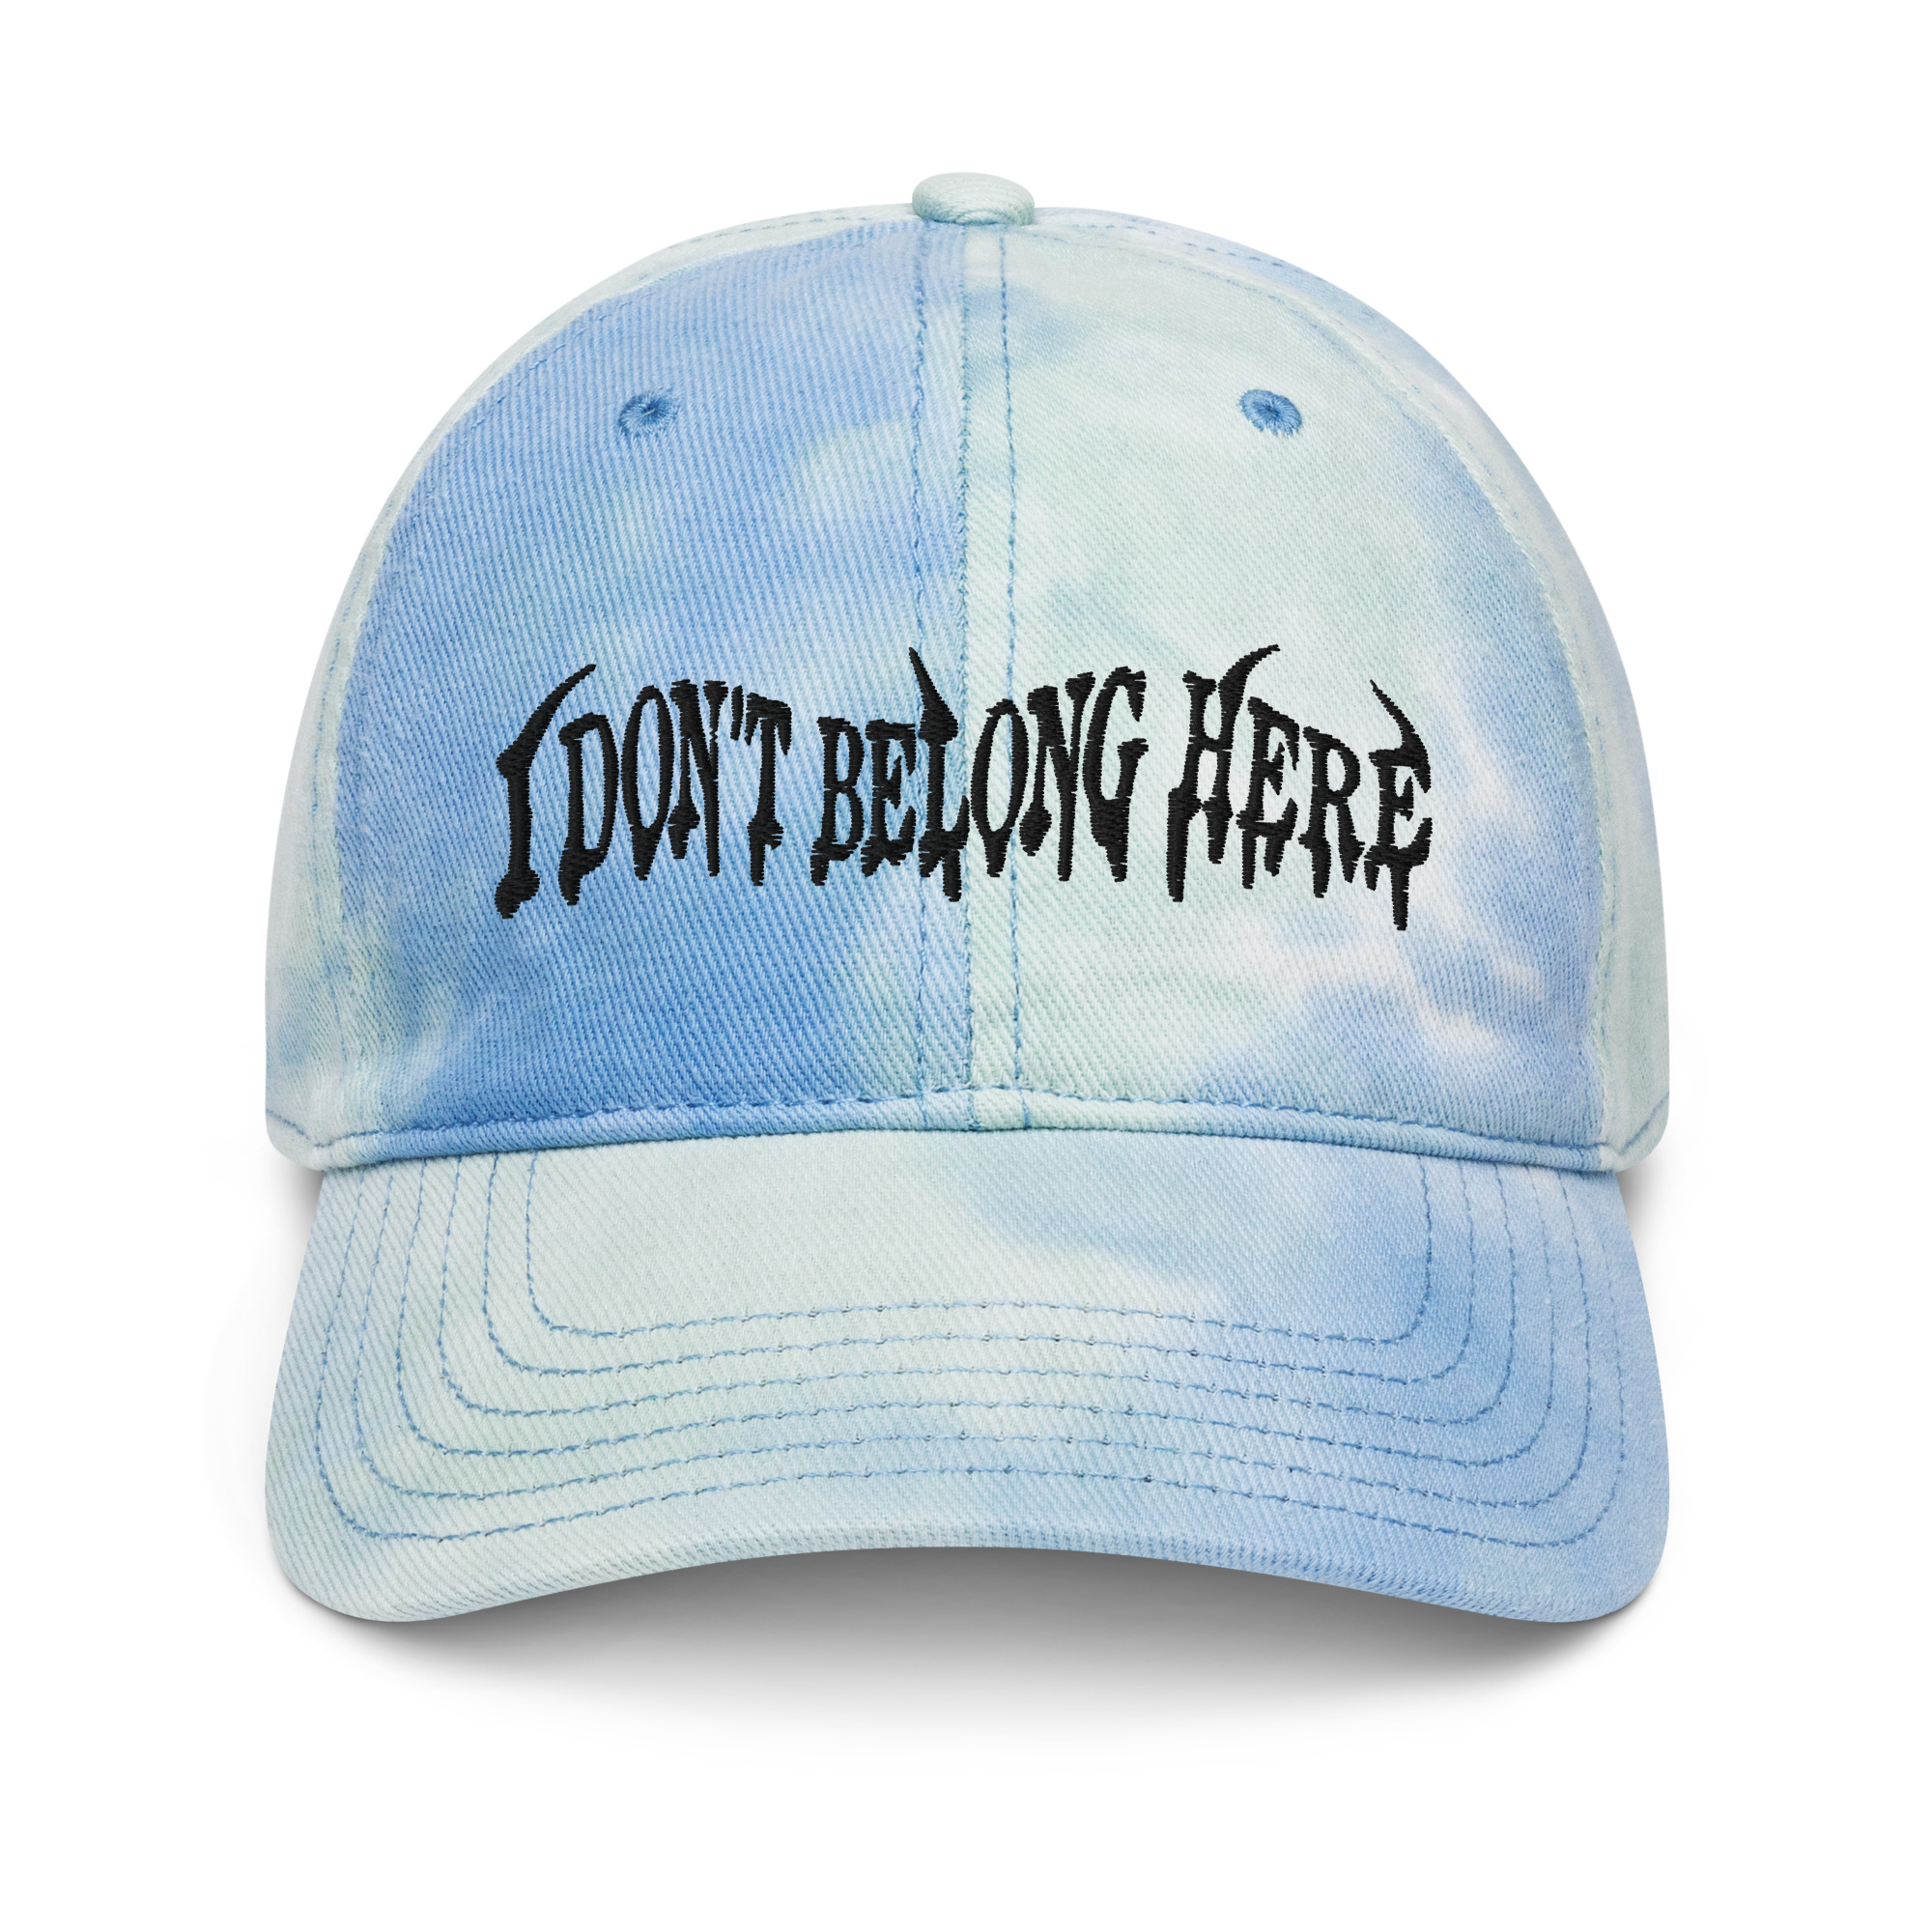 I don’t belong here - Tie dye hat